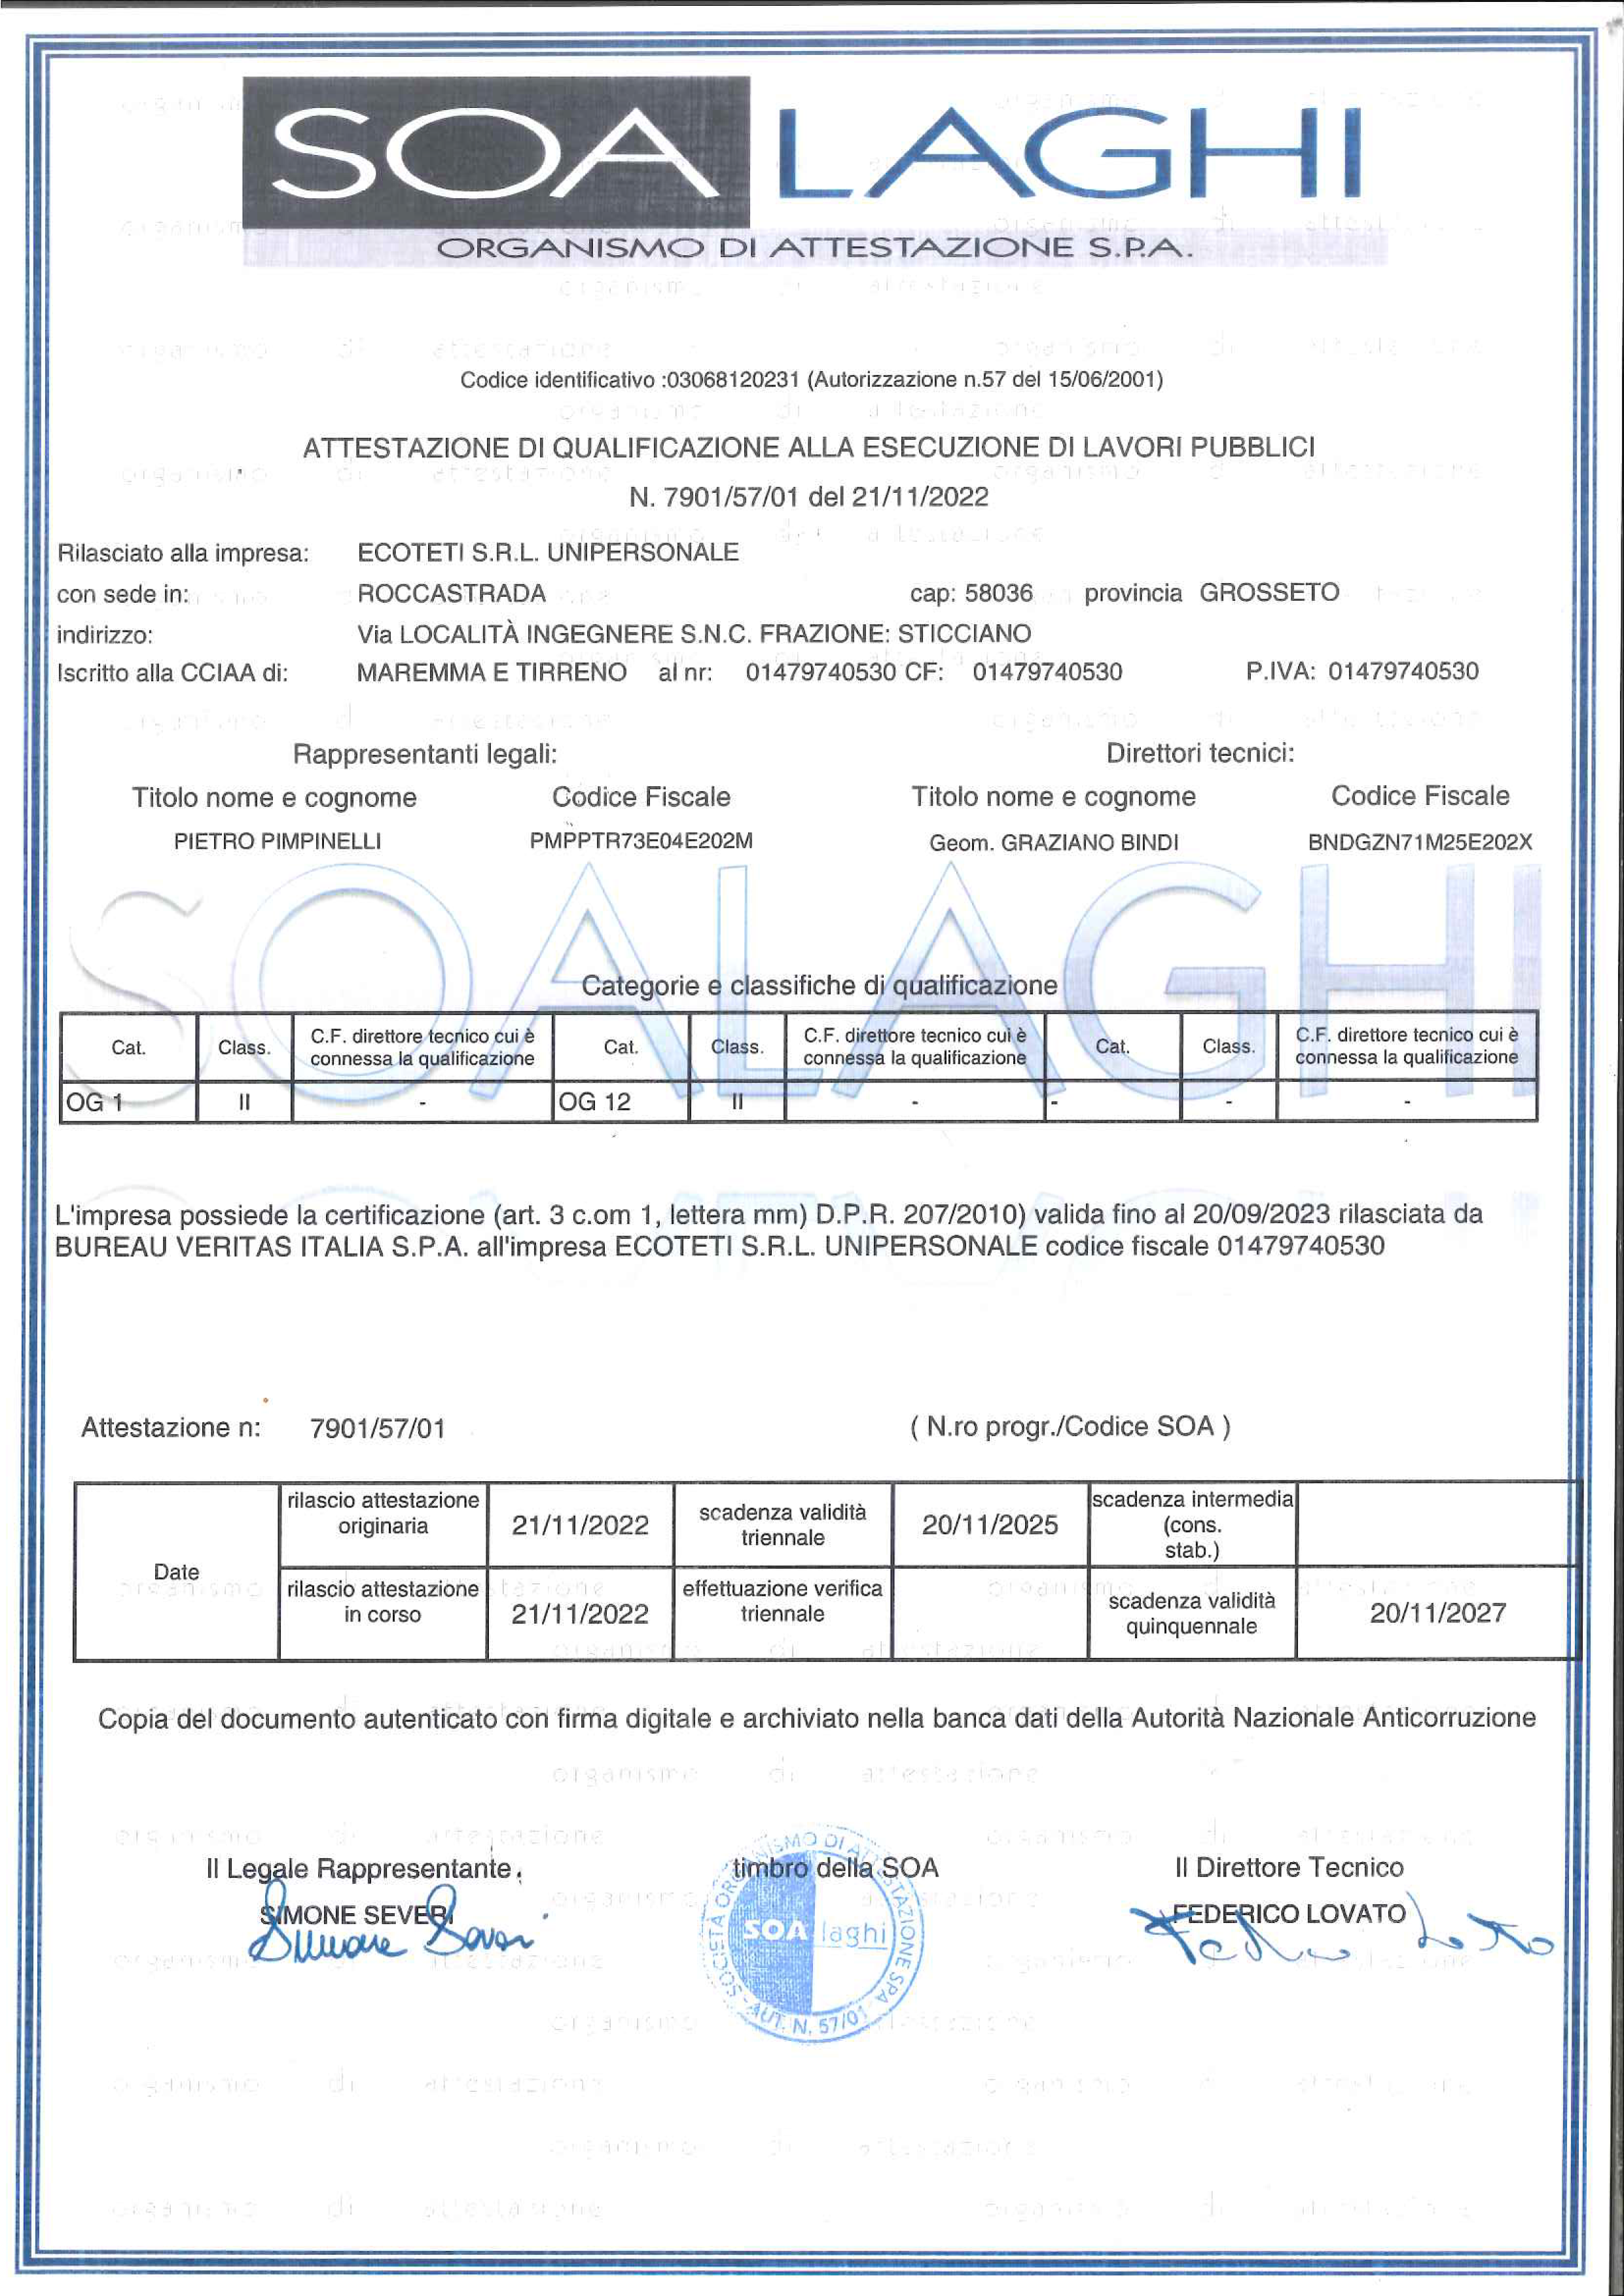 certificazione soa laghi organismo di attestazione - ecoteti srl azienda idonea alle gare d'appalto pubblico certificata con attestazione SOA